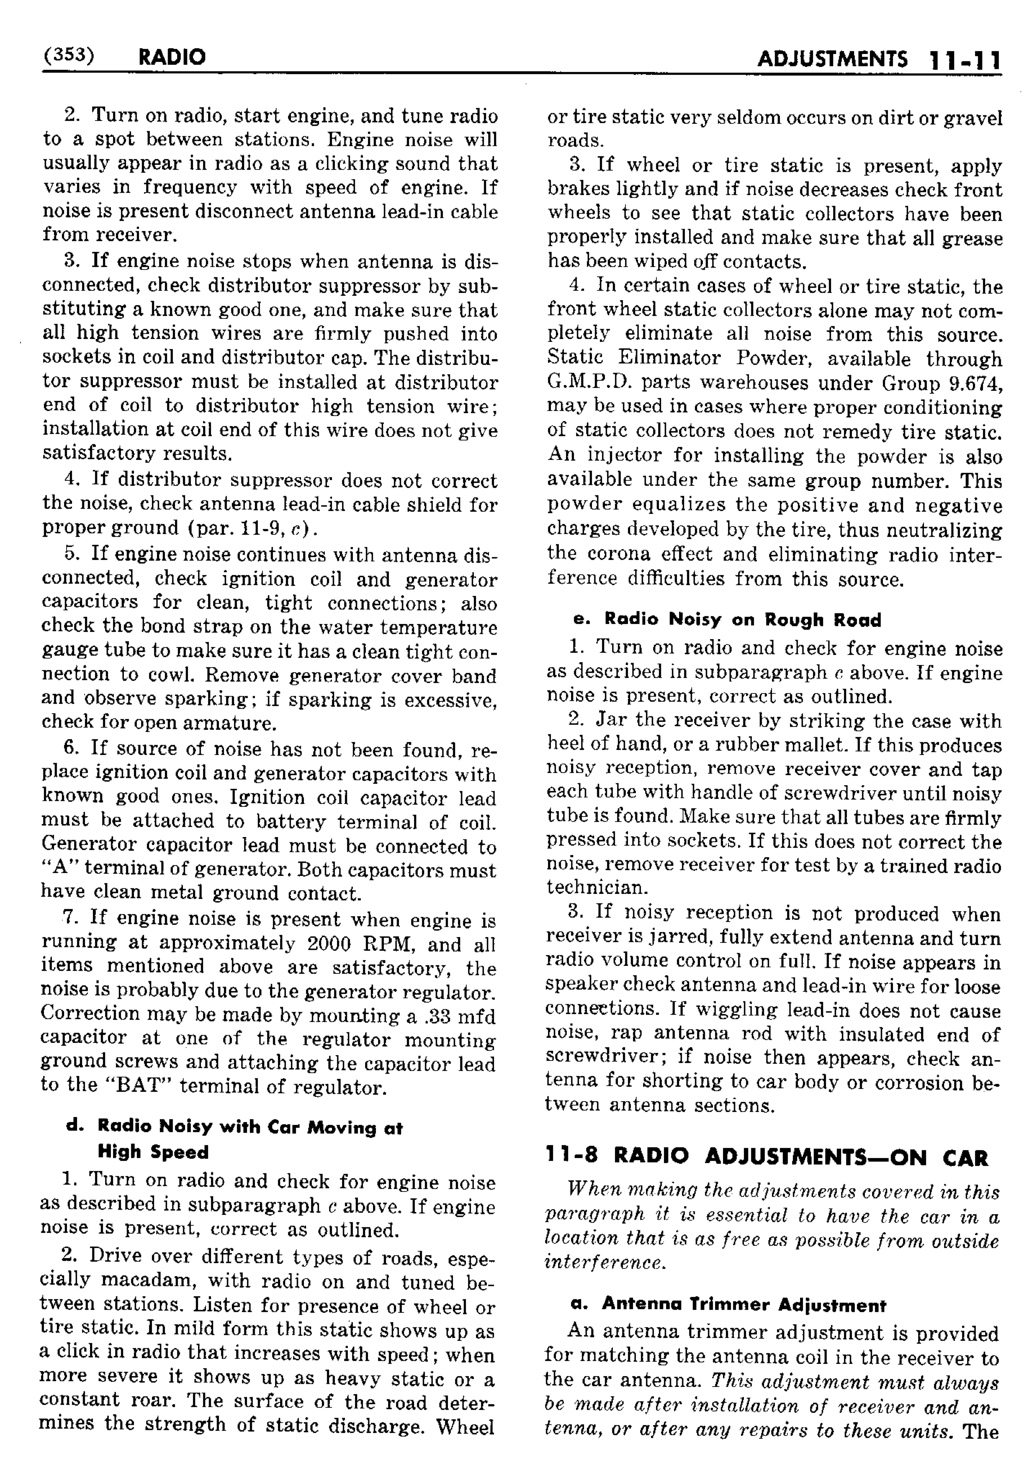 n_12 1950 Buick Shop Manual - Accessories-011-011.jpg